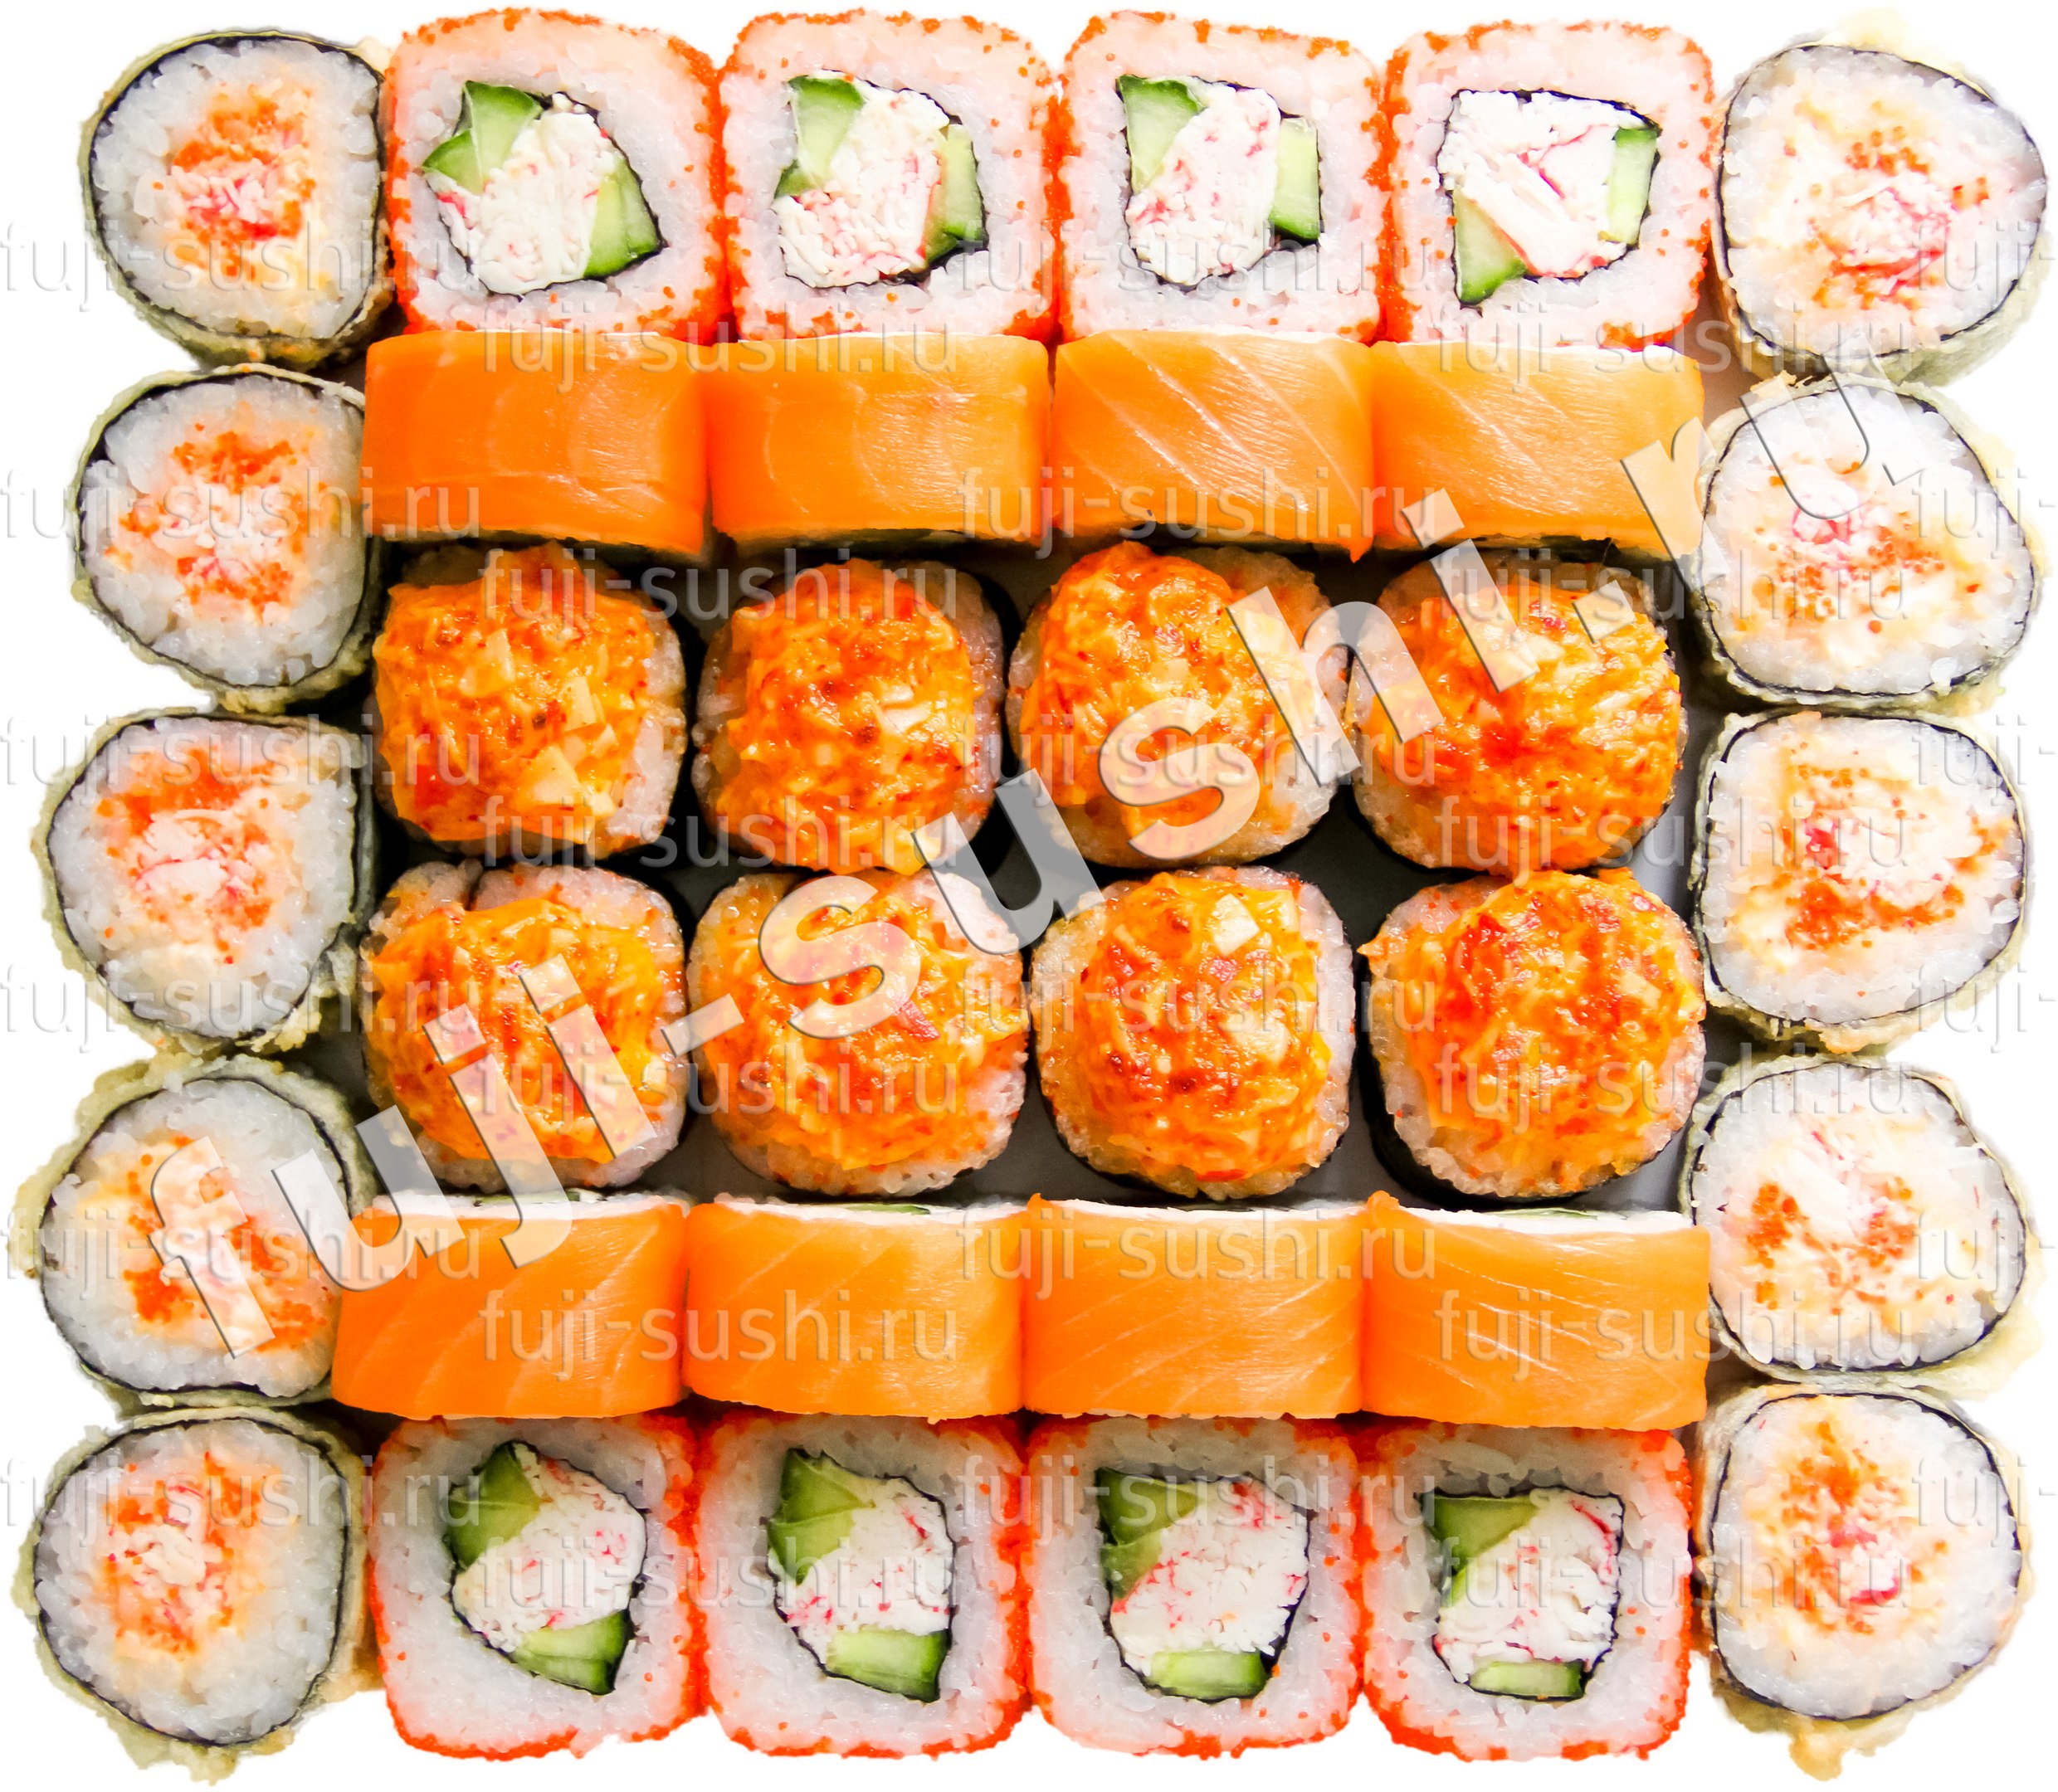 Фуджи суши в самаре с доставкой бесплатно заказать фото 10